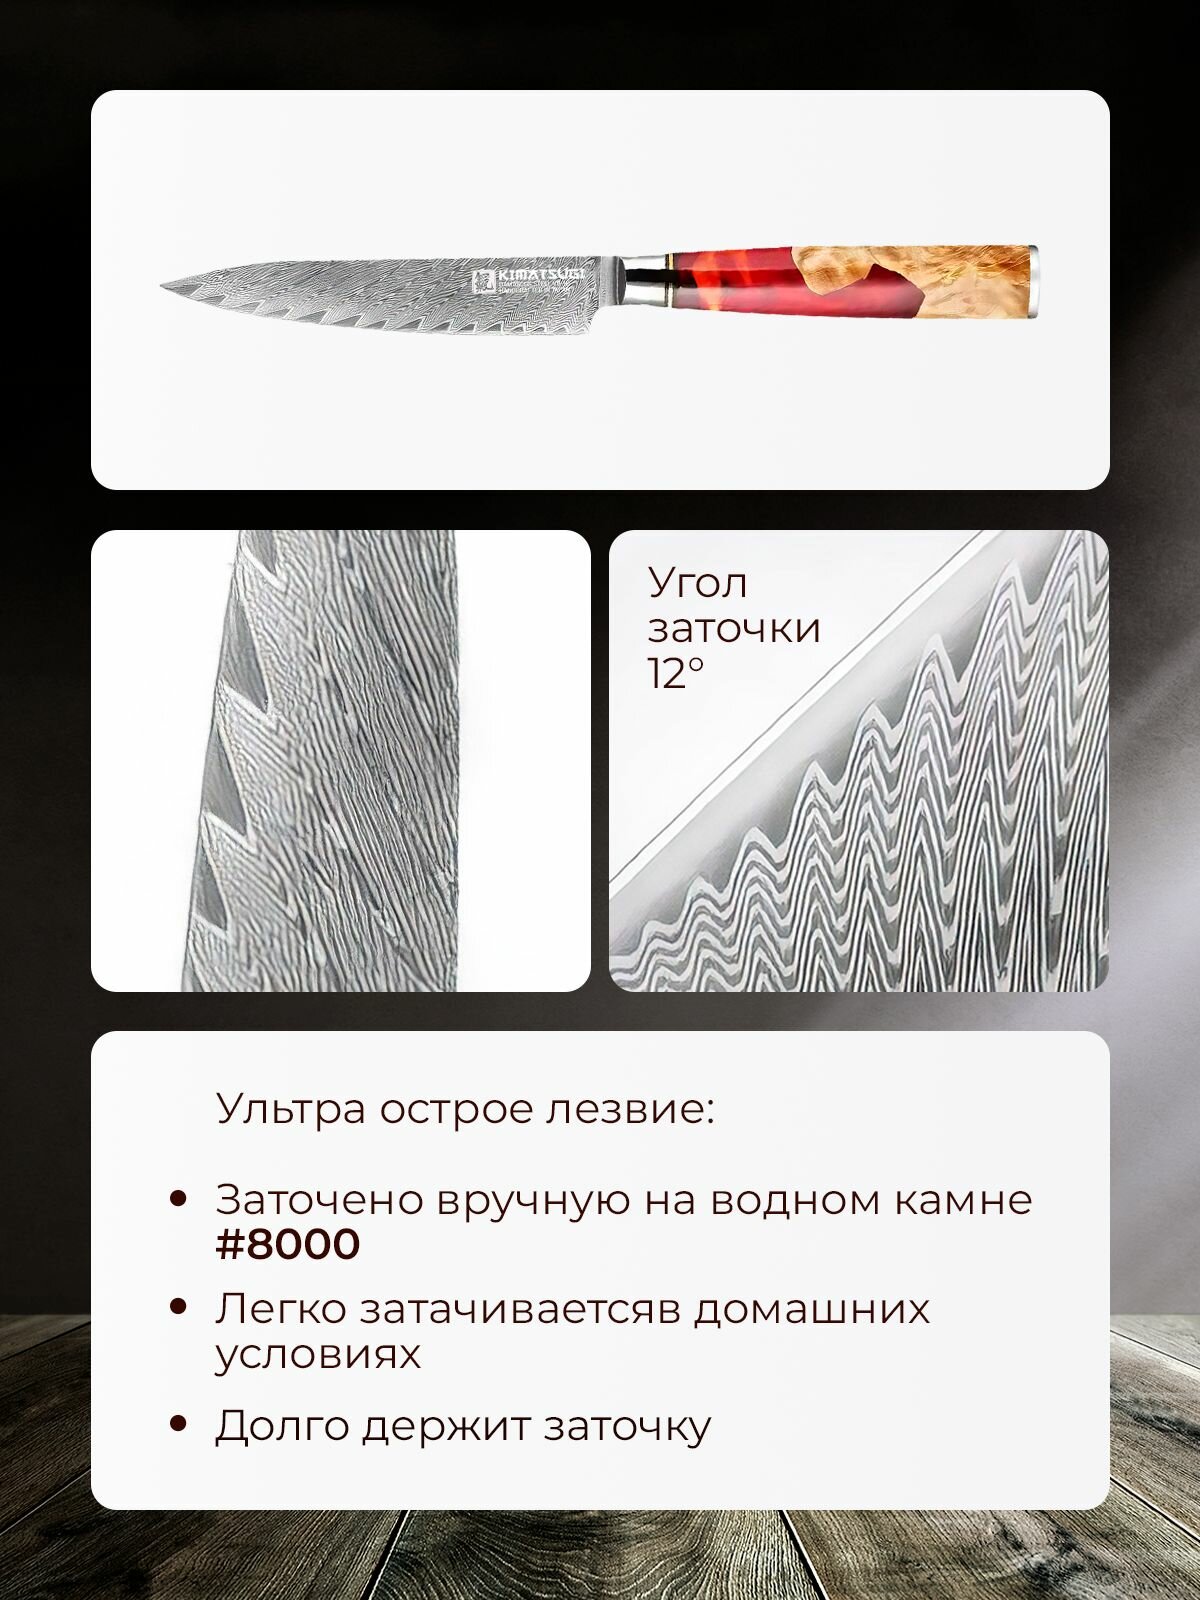 Kimatsugi / Японский кухонный поварской универсальный нож Damascus #116. Настоящая дамасская сталь 67 слоев. VG-10 в обкладках. В подарочной коробке